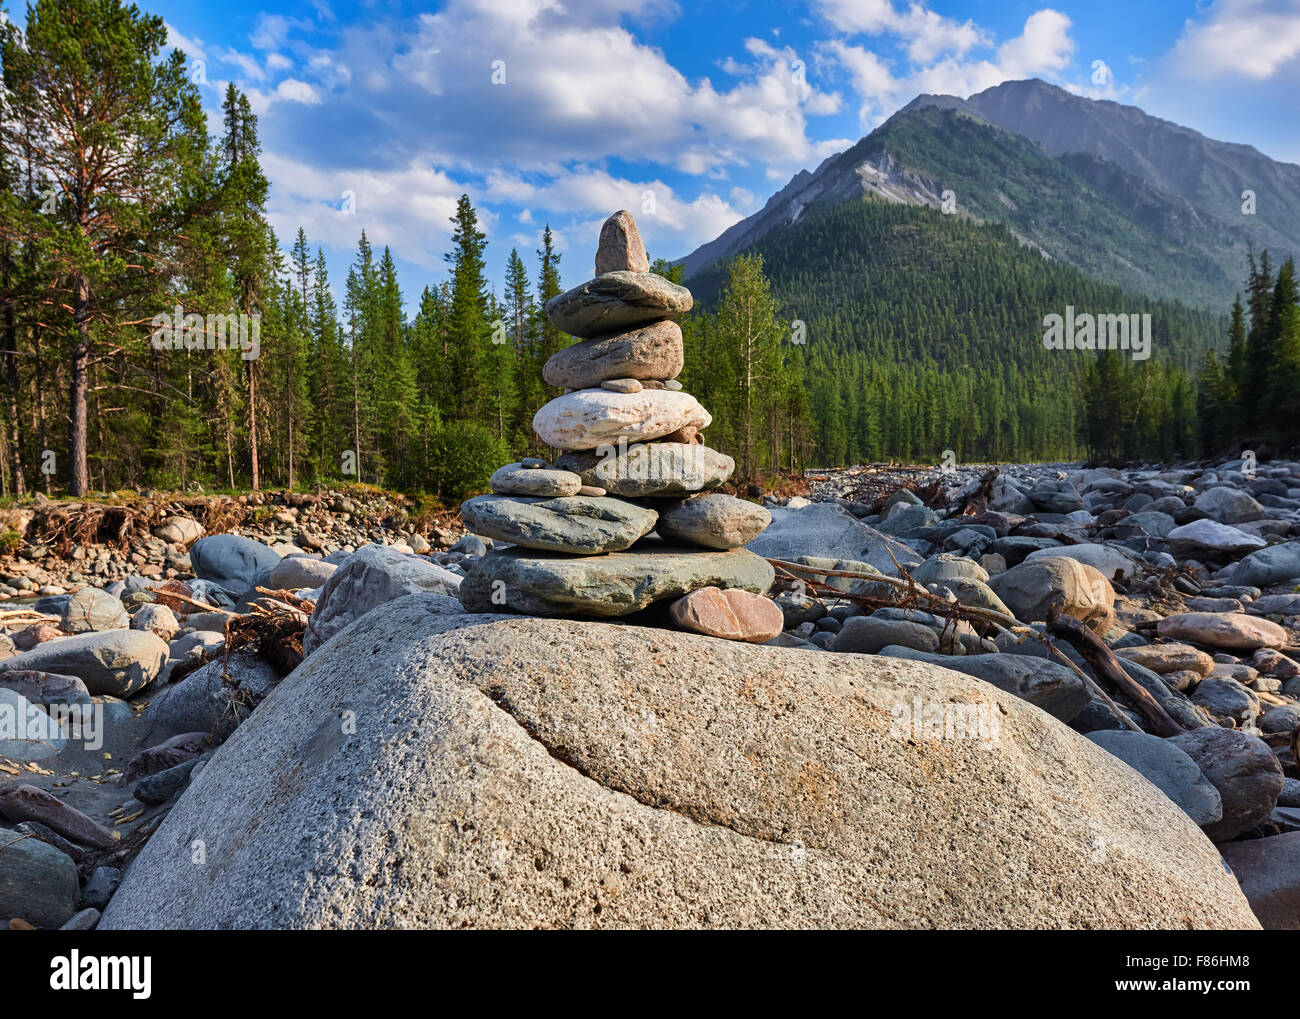 Cairn. Pyramide de pierres. La vallée de la rivière Shumak montagne sibérienne. Sayan de l'Est. La Russie. Profondeur de champ, l'accent sur les pyr Banque D'Images